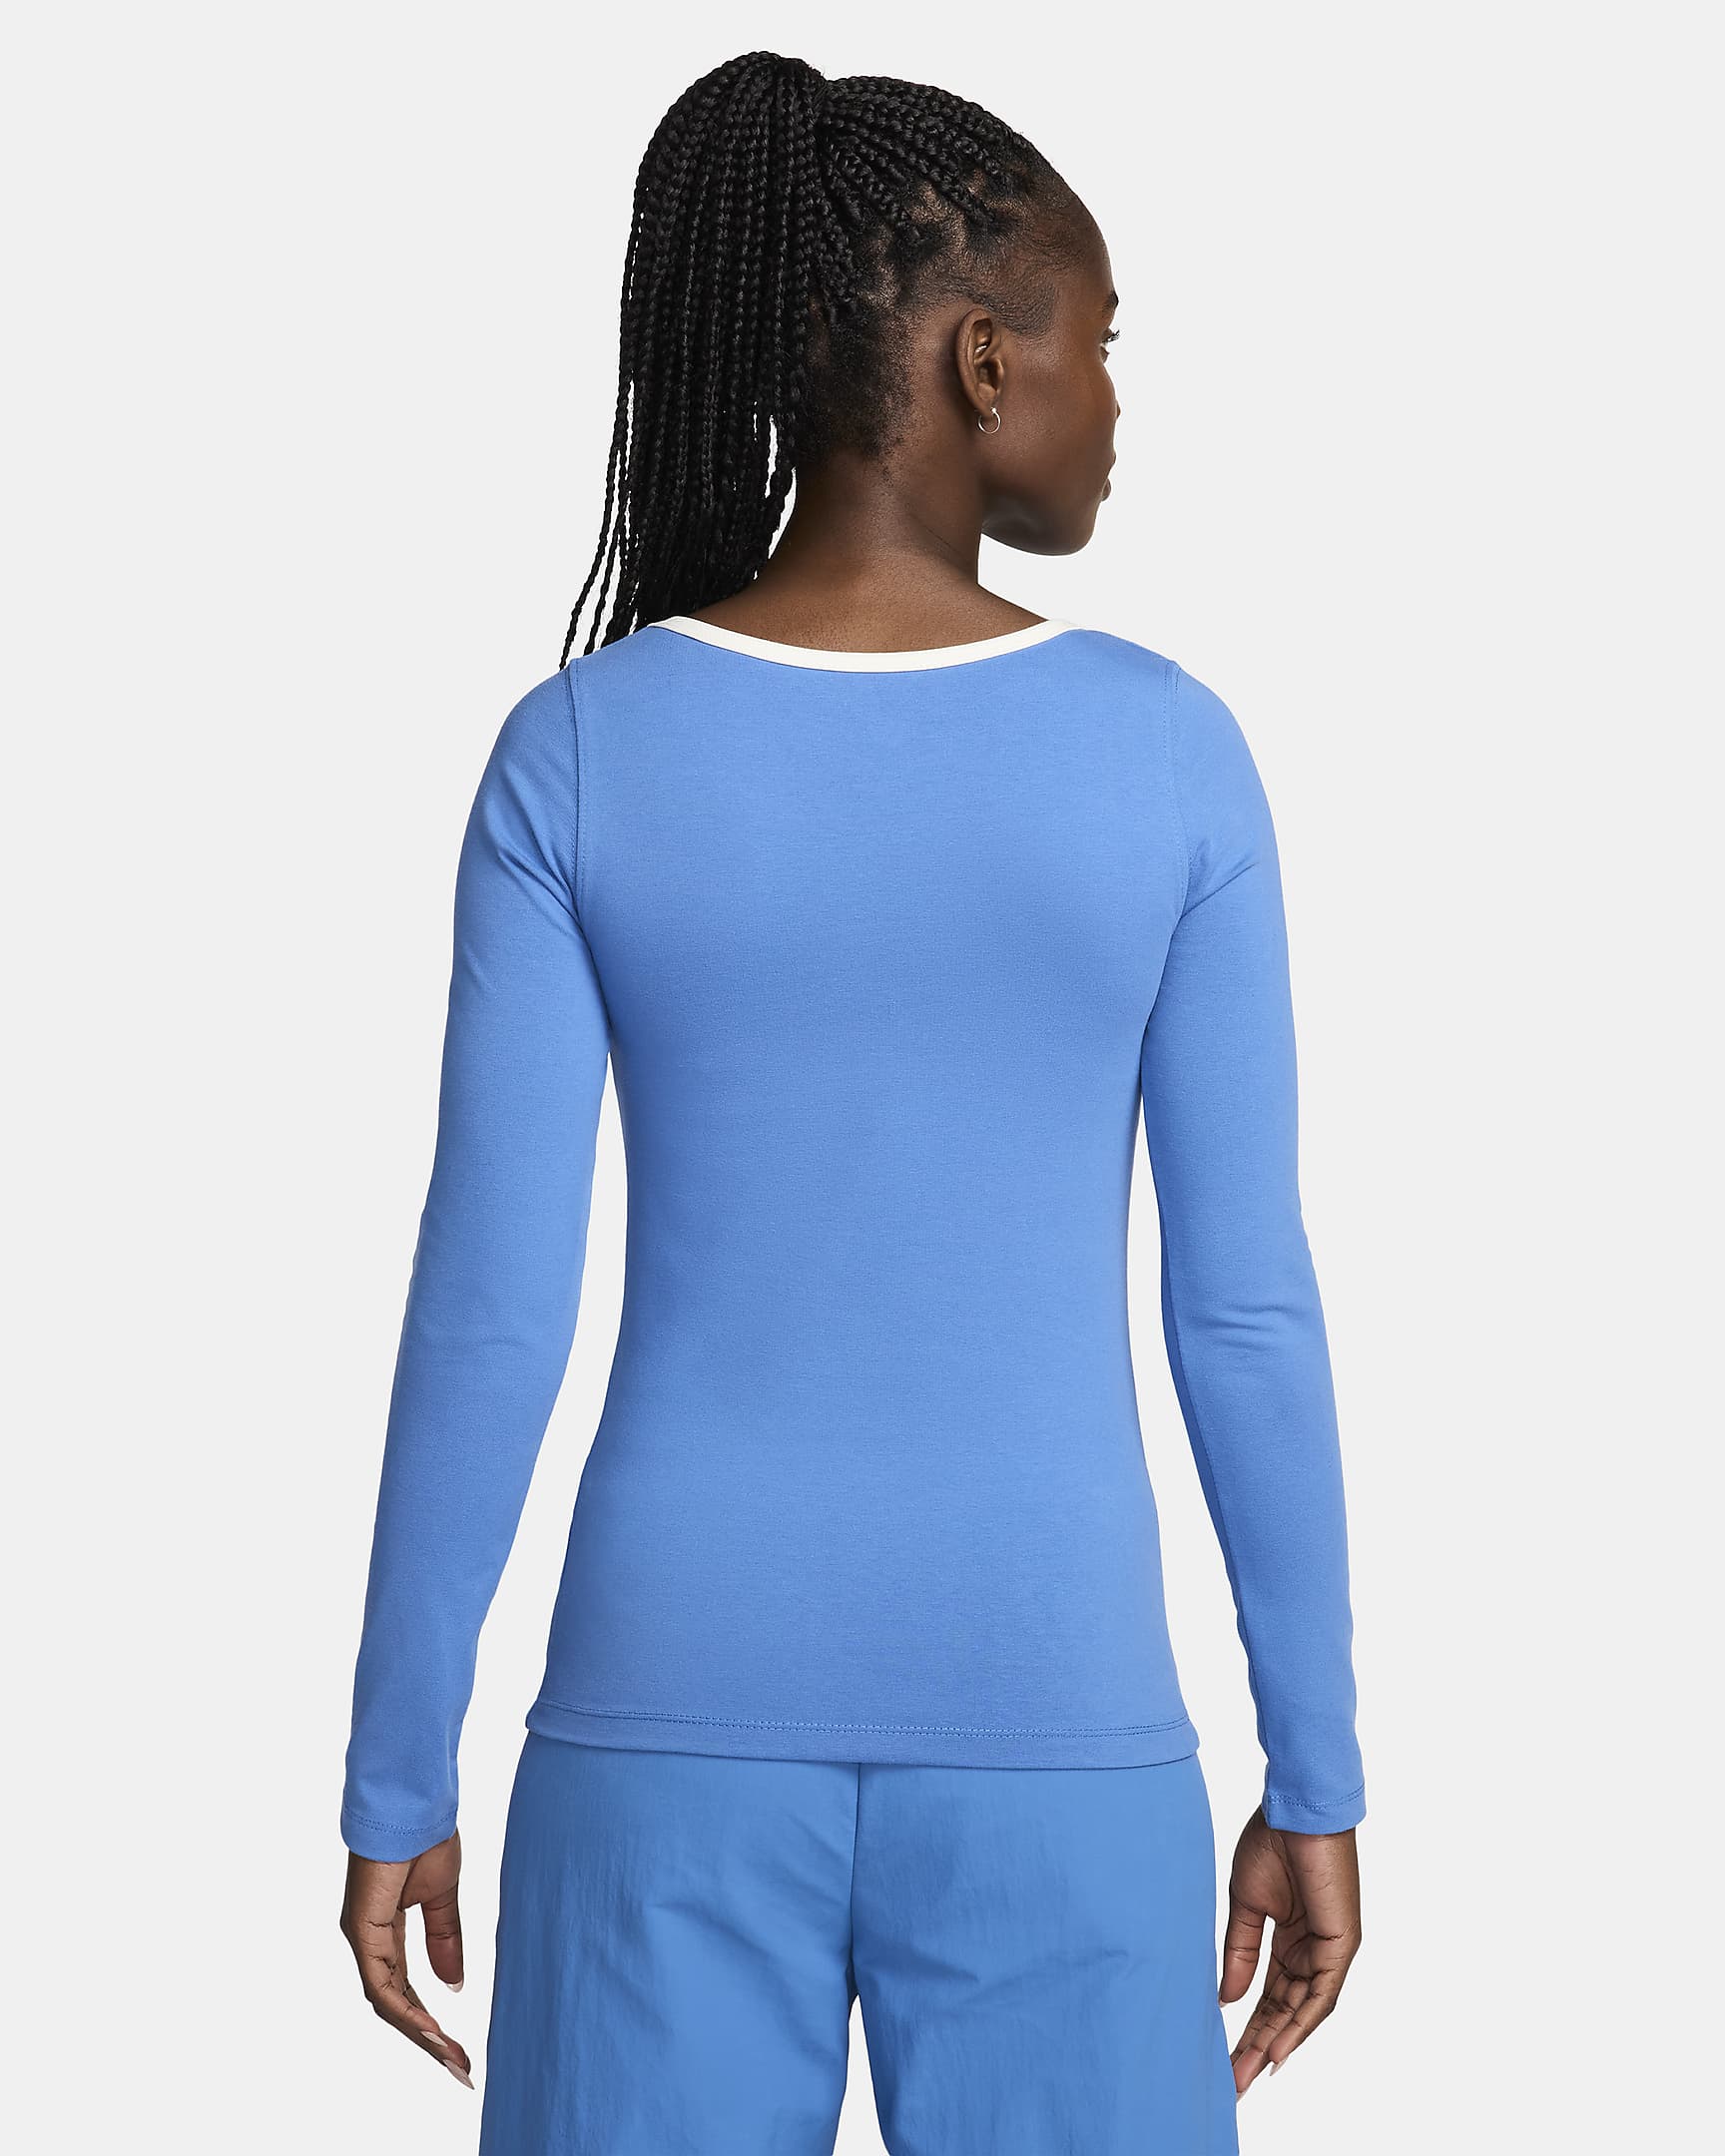 Nike Sportswear Women's Square-Neck Long-Sleeve Top. Nike UK